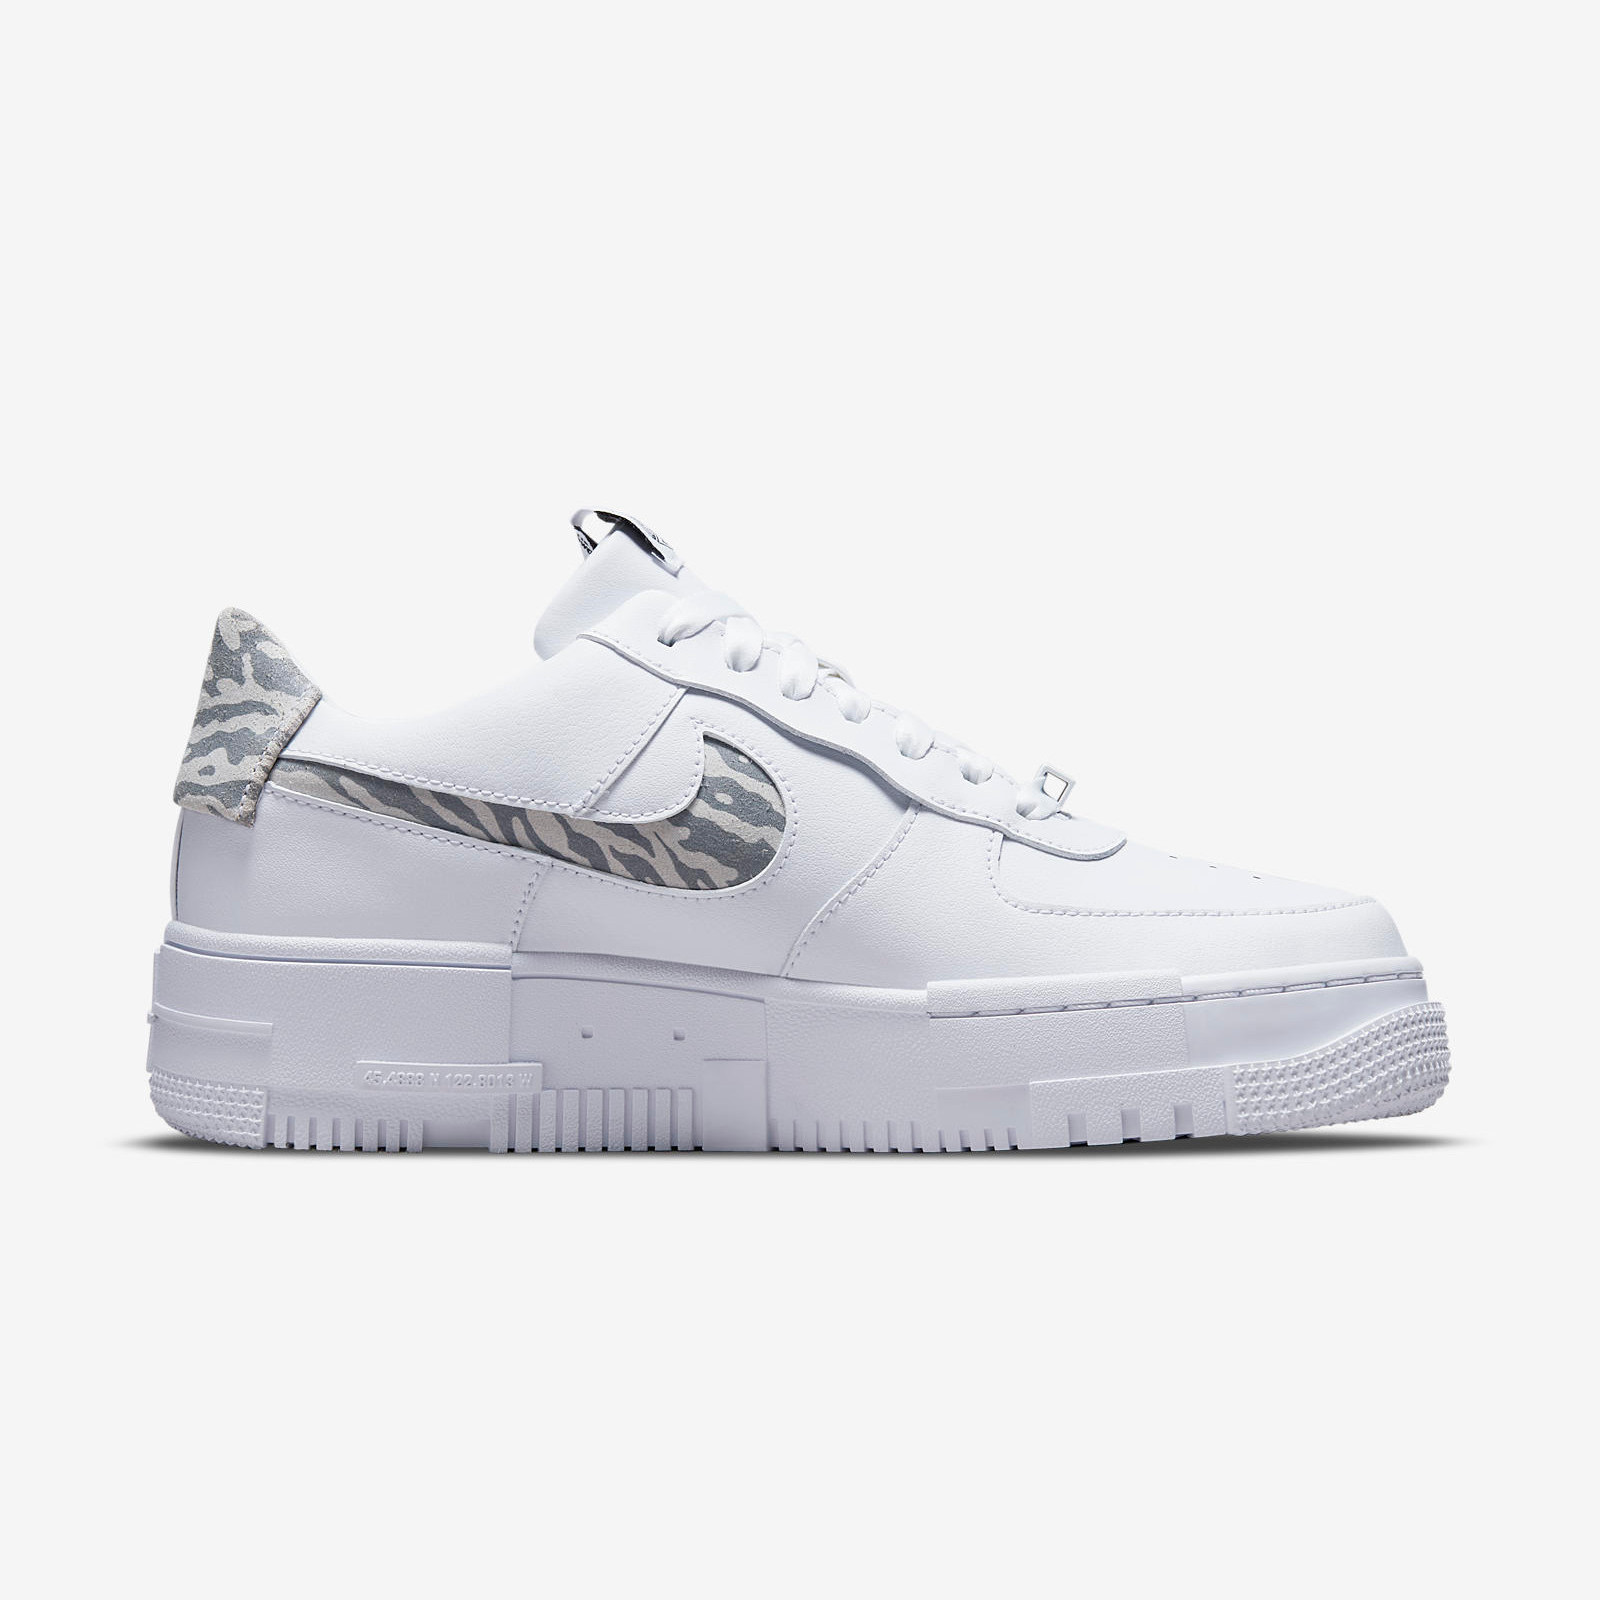 Nike Air Force 1 Pixel
« Zebra »